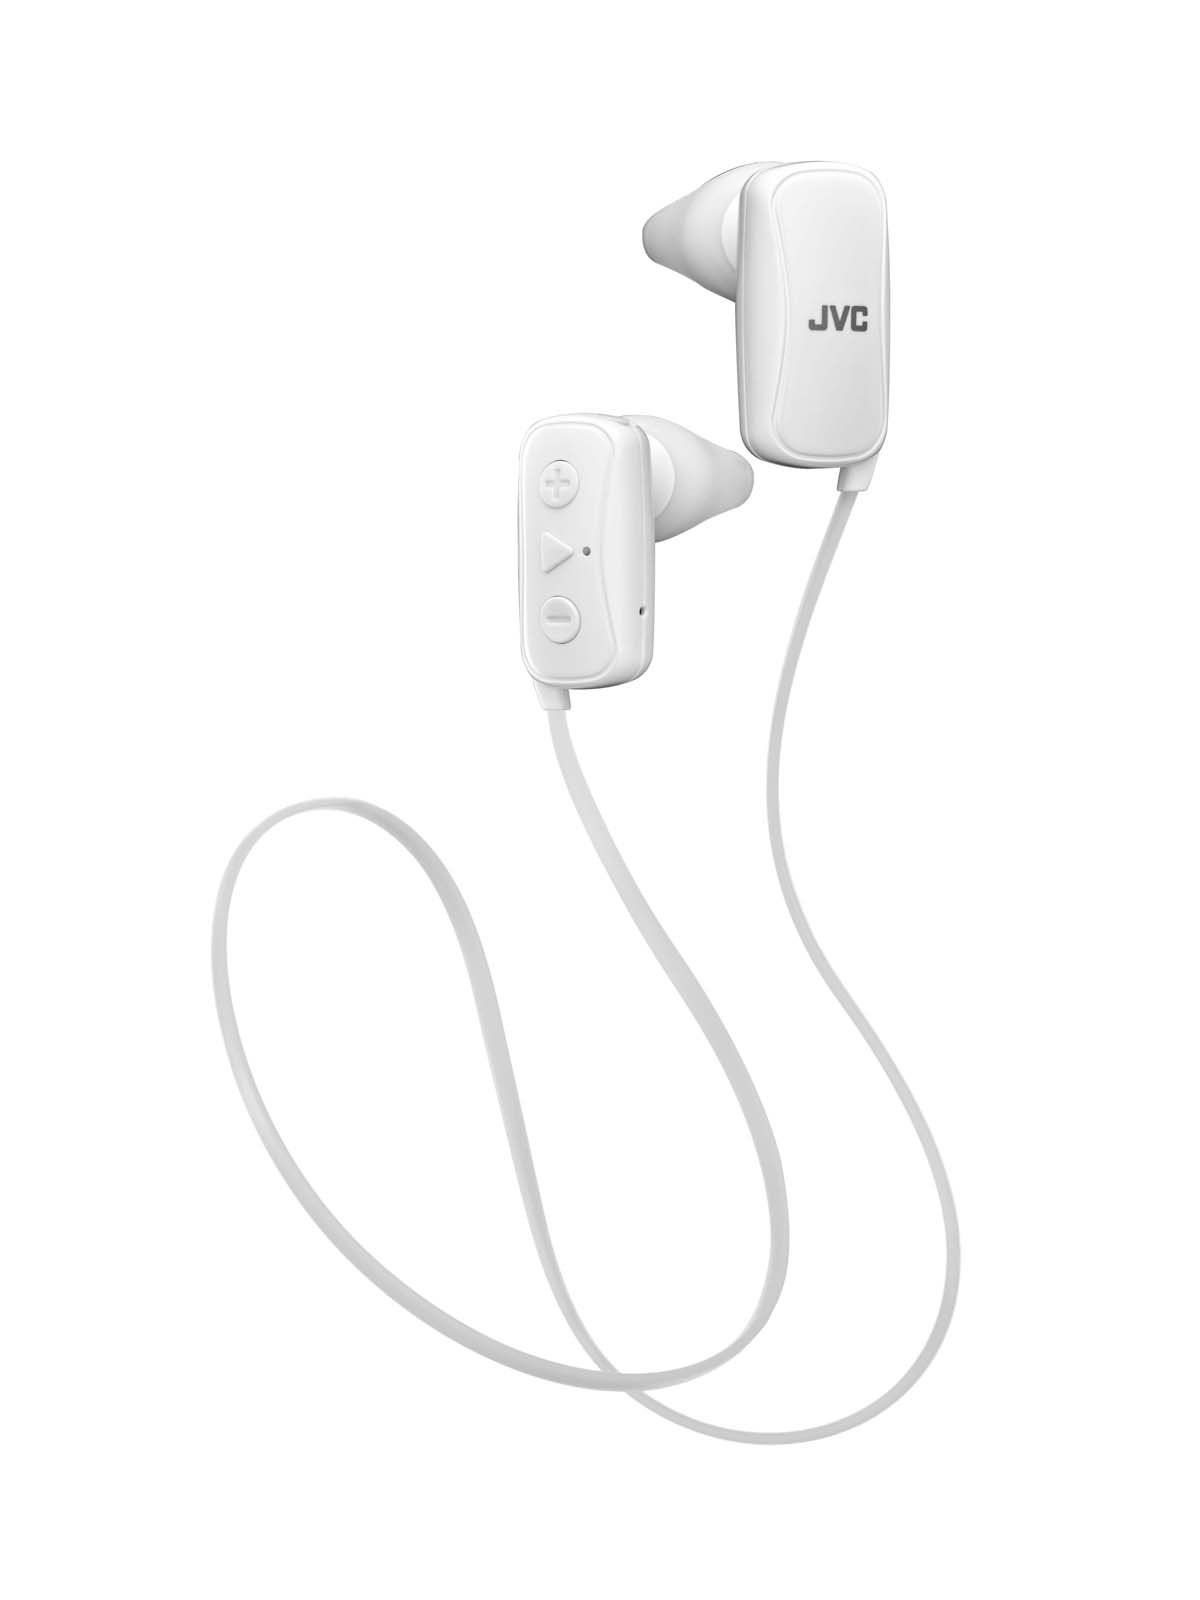 メルカリShops - 色: ホワイトJVC スポーツ用ワイヤレスイヤホン Bluetooth対応